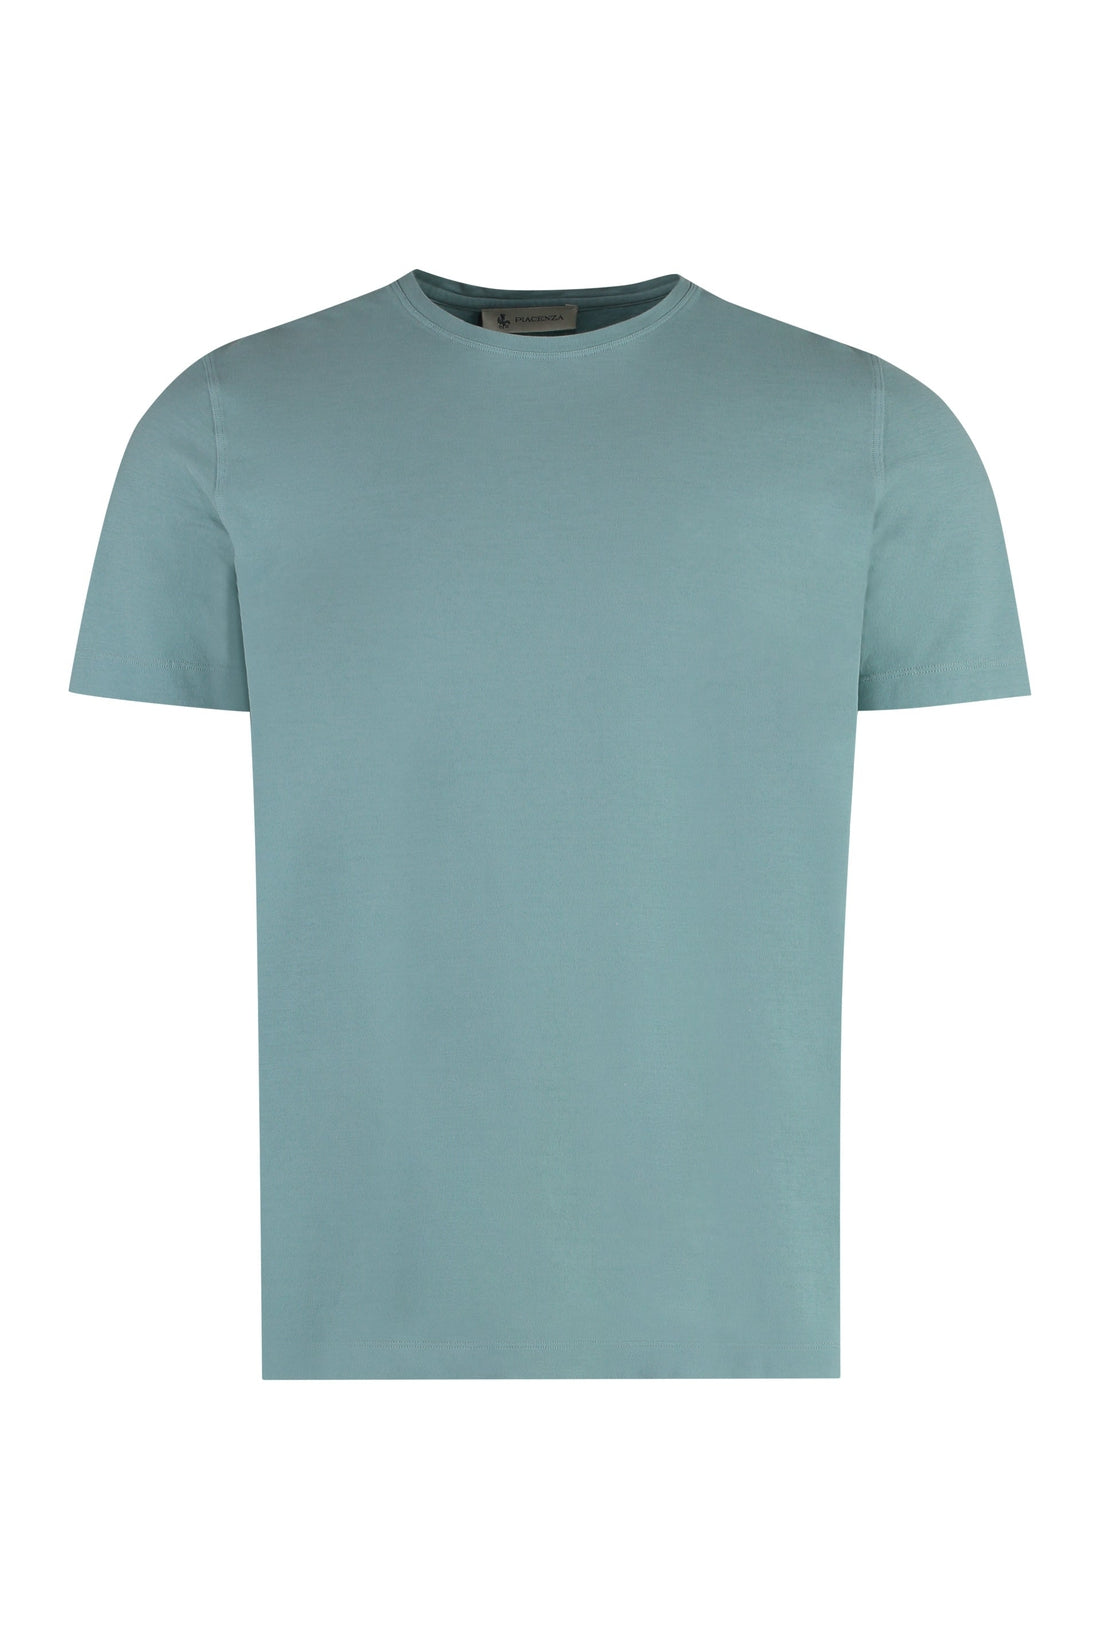 Piralo-OUTLET-SALE-Cotton T-shirt-ARCHIVIST